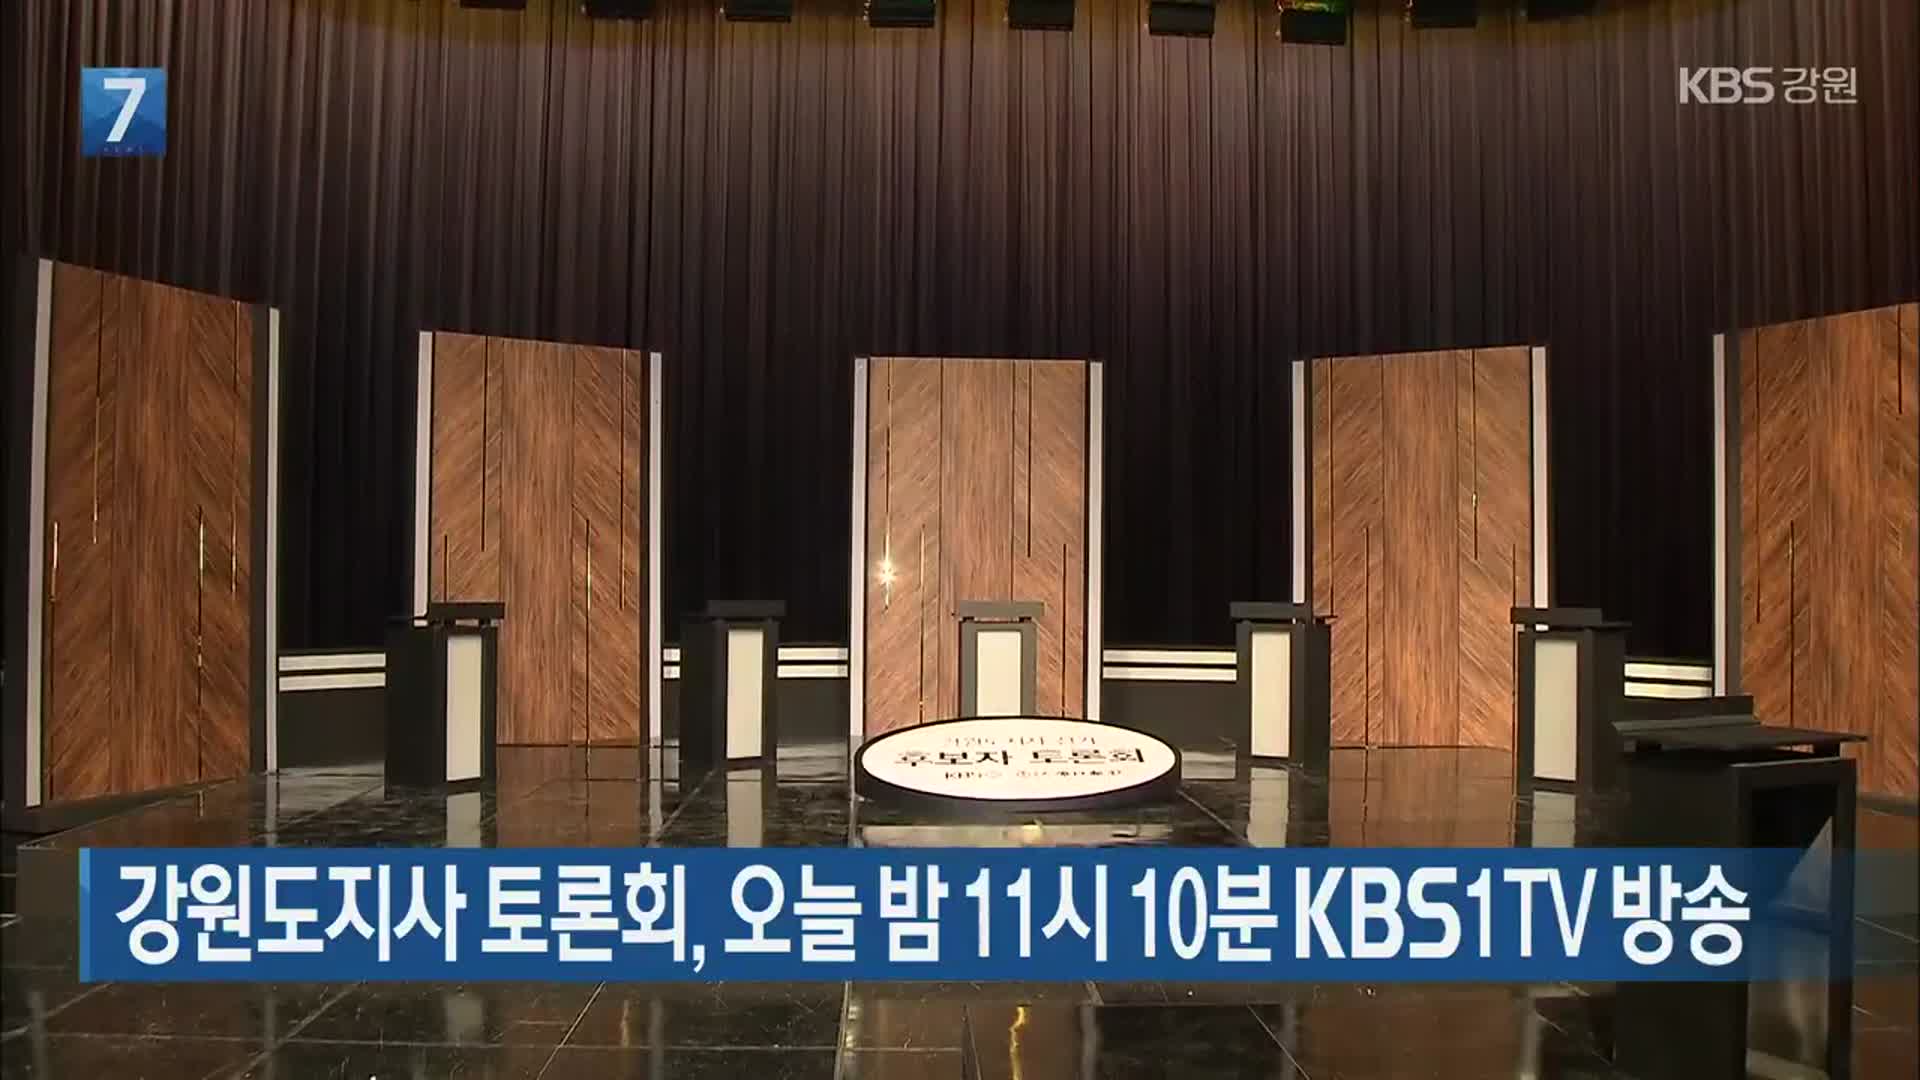 강원도지사 토론회, 오늘 밤 11시 10분 KBS1TV 방송